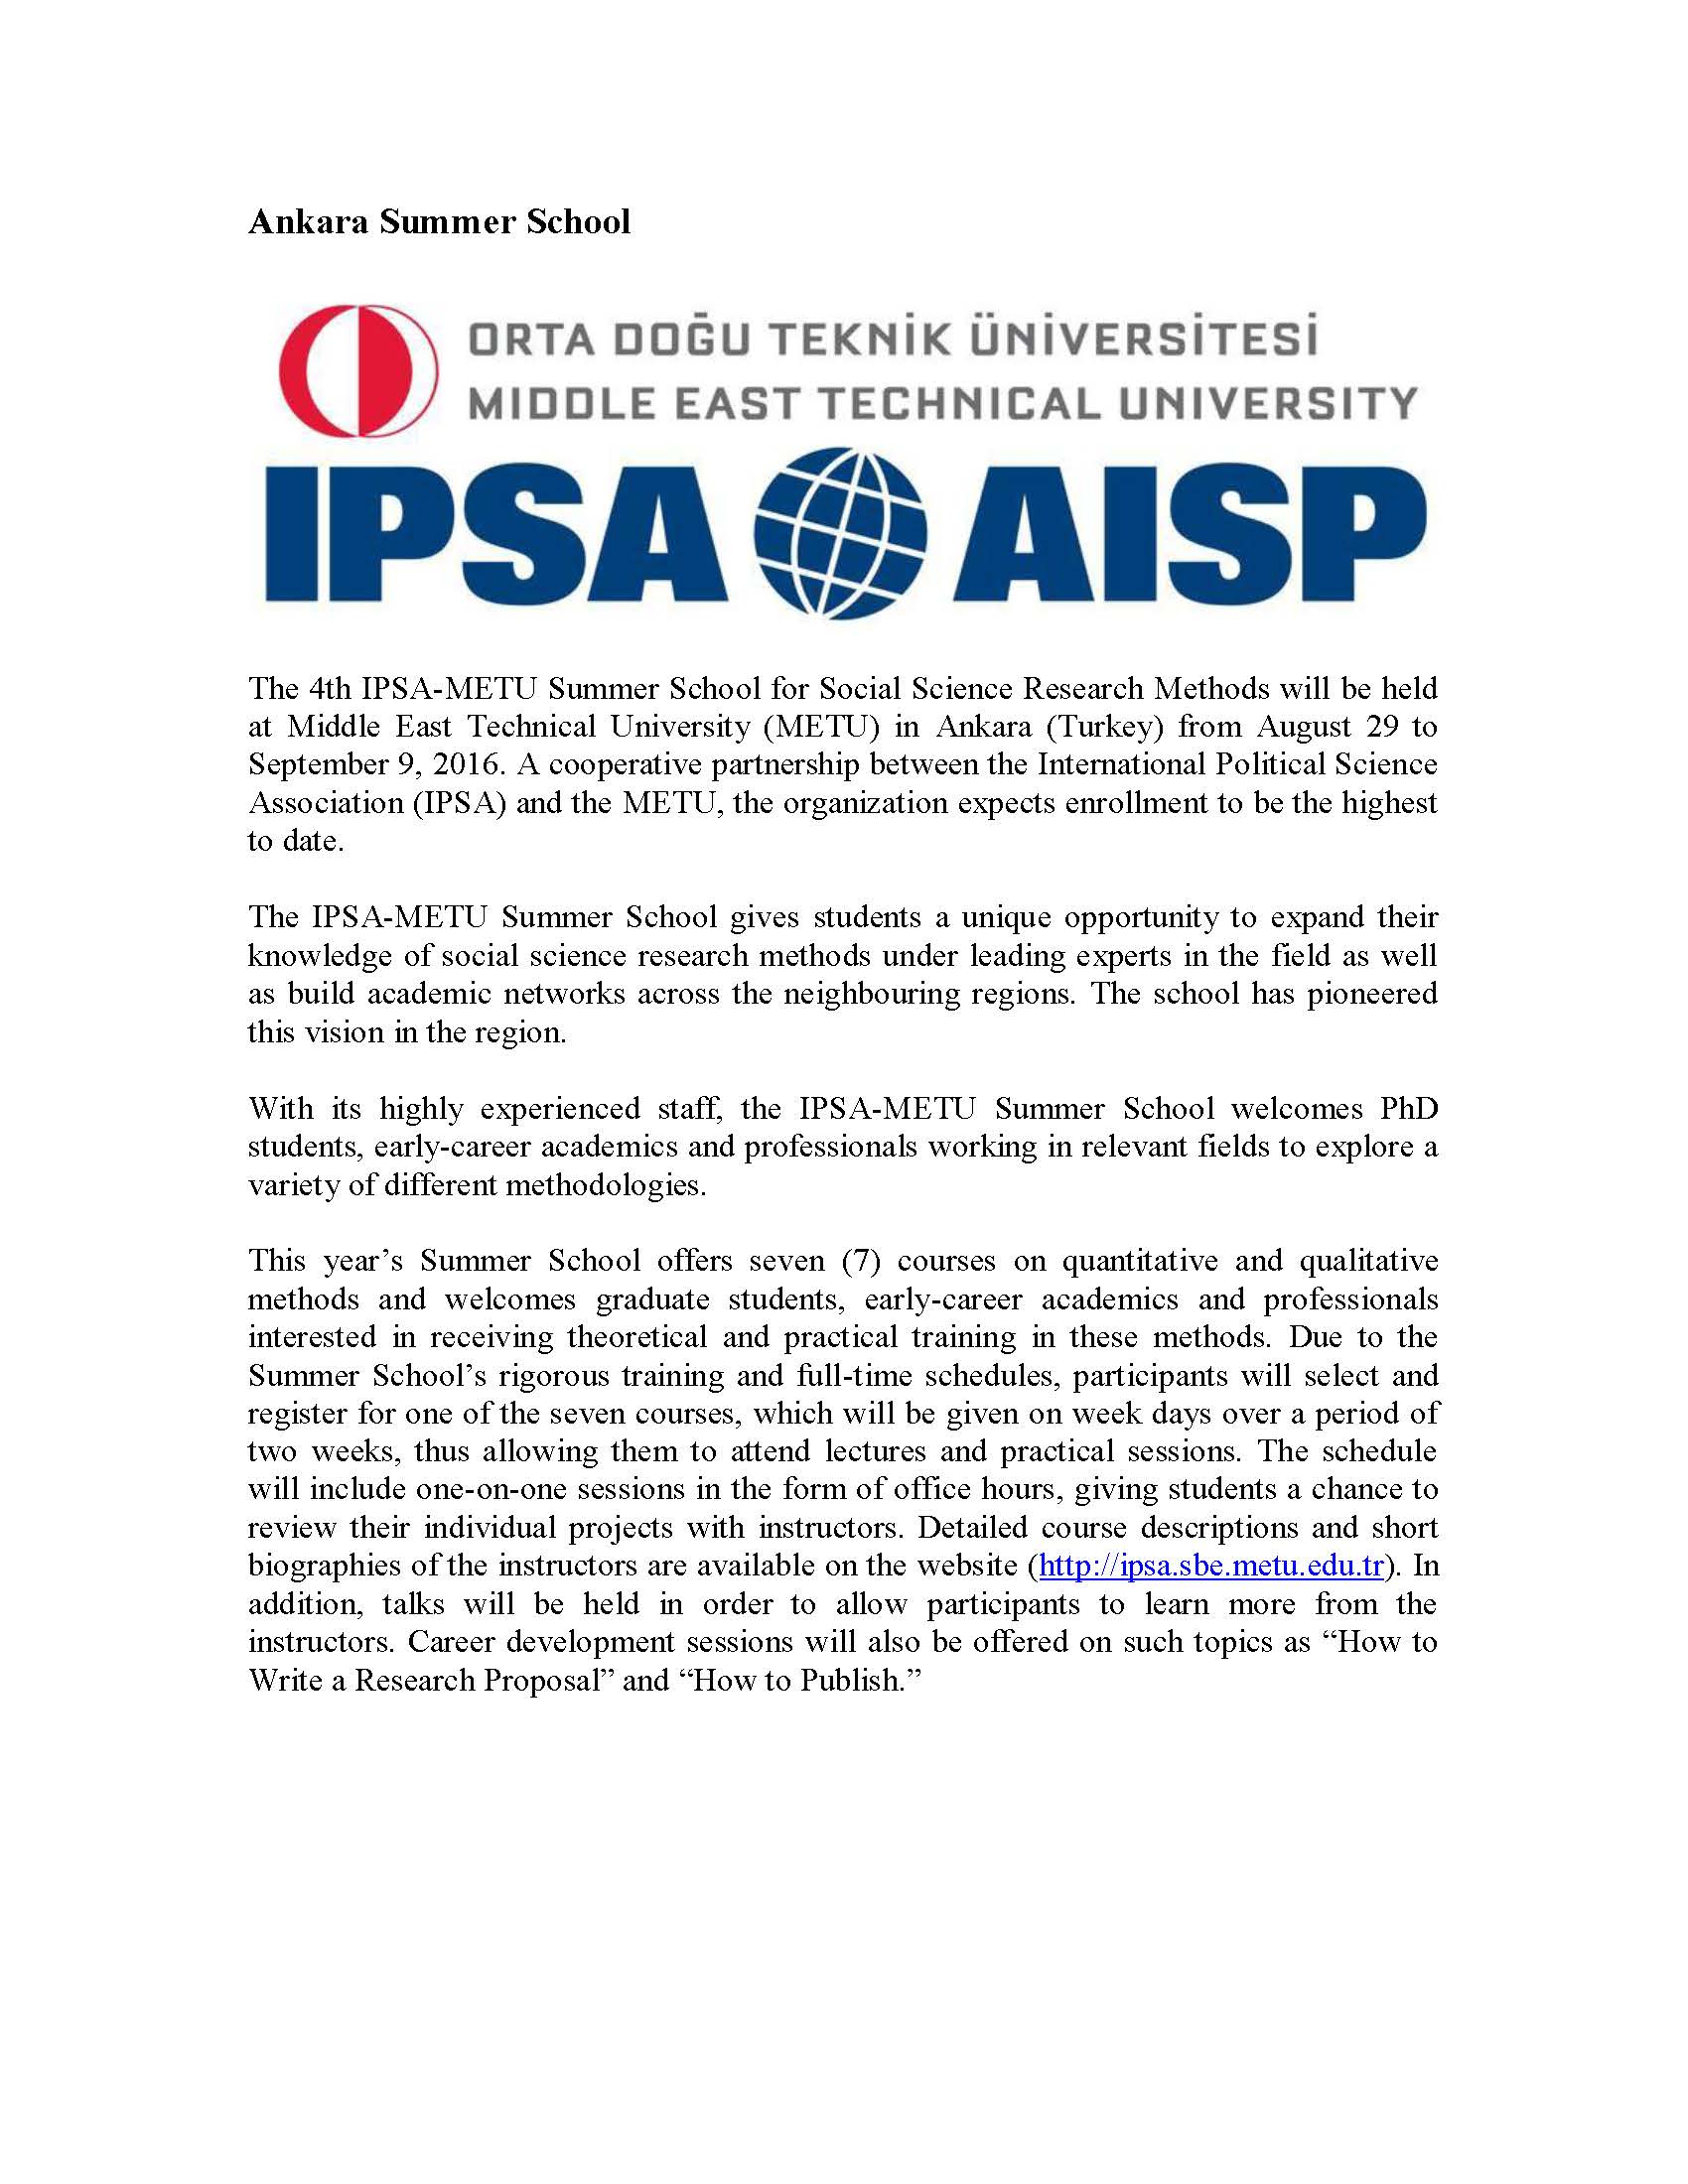 Upcoming IPSA Summer Schools_Página_3